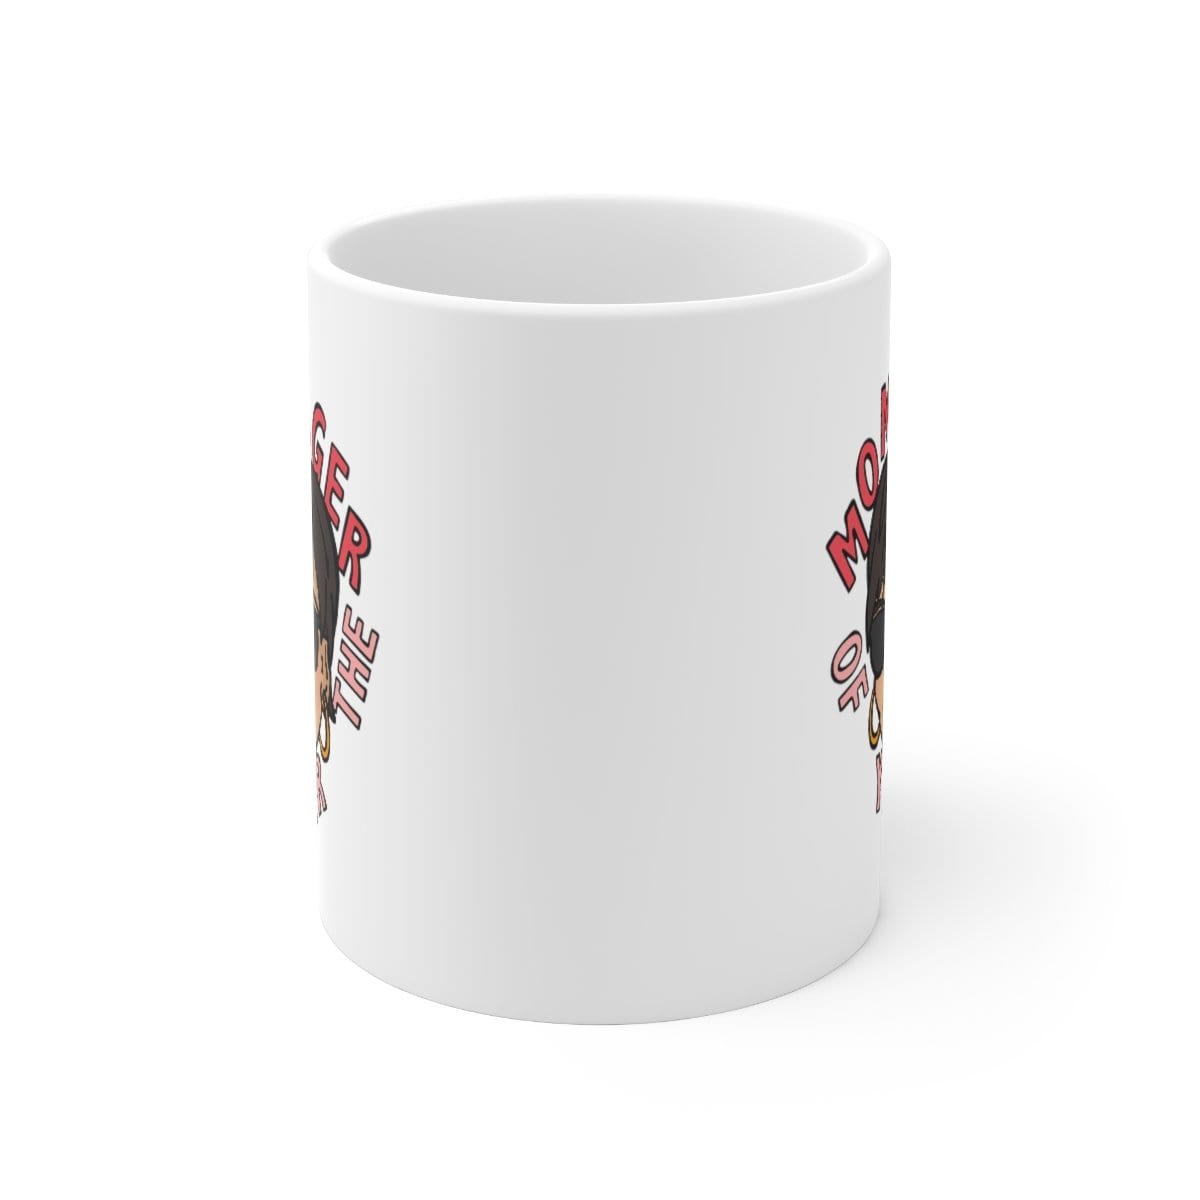 Momager 🕶️ - Coffee Mug